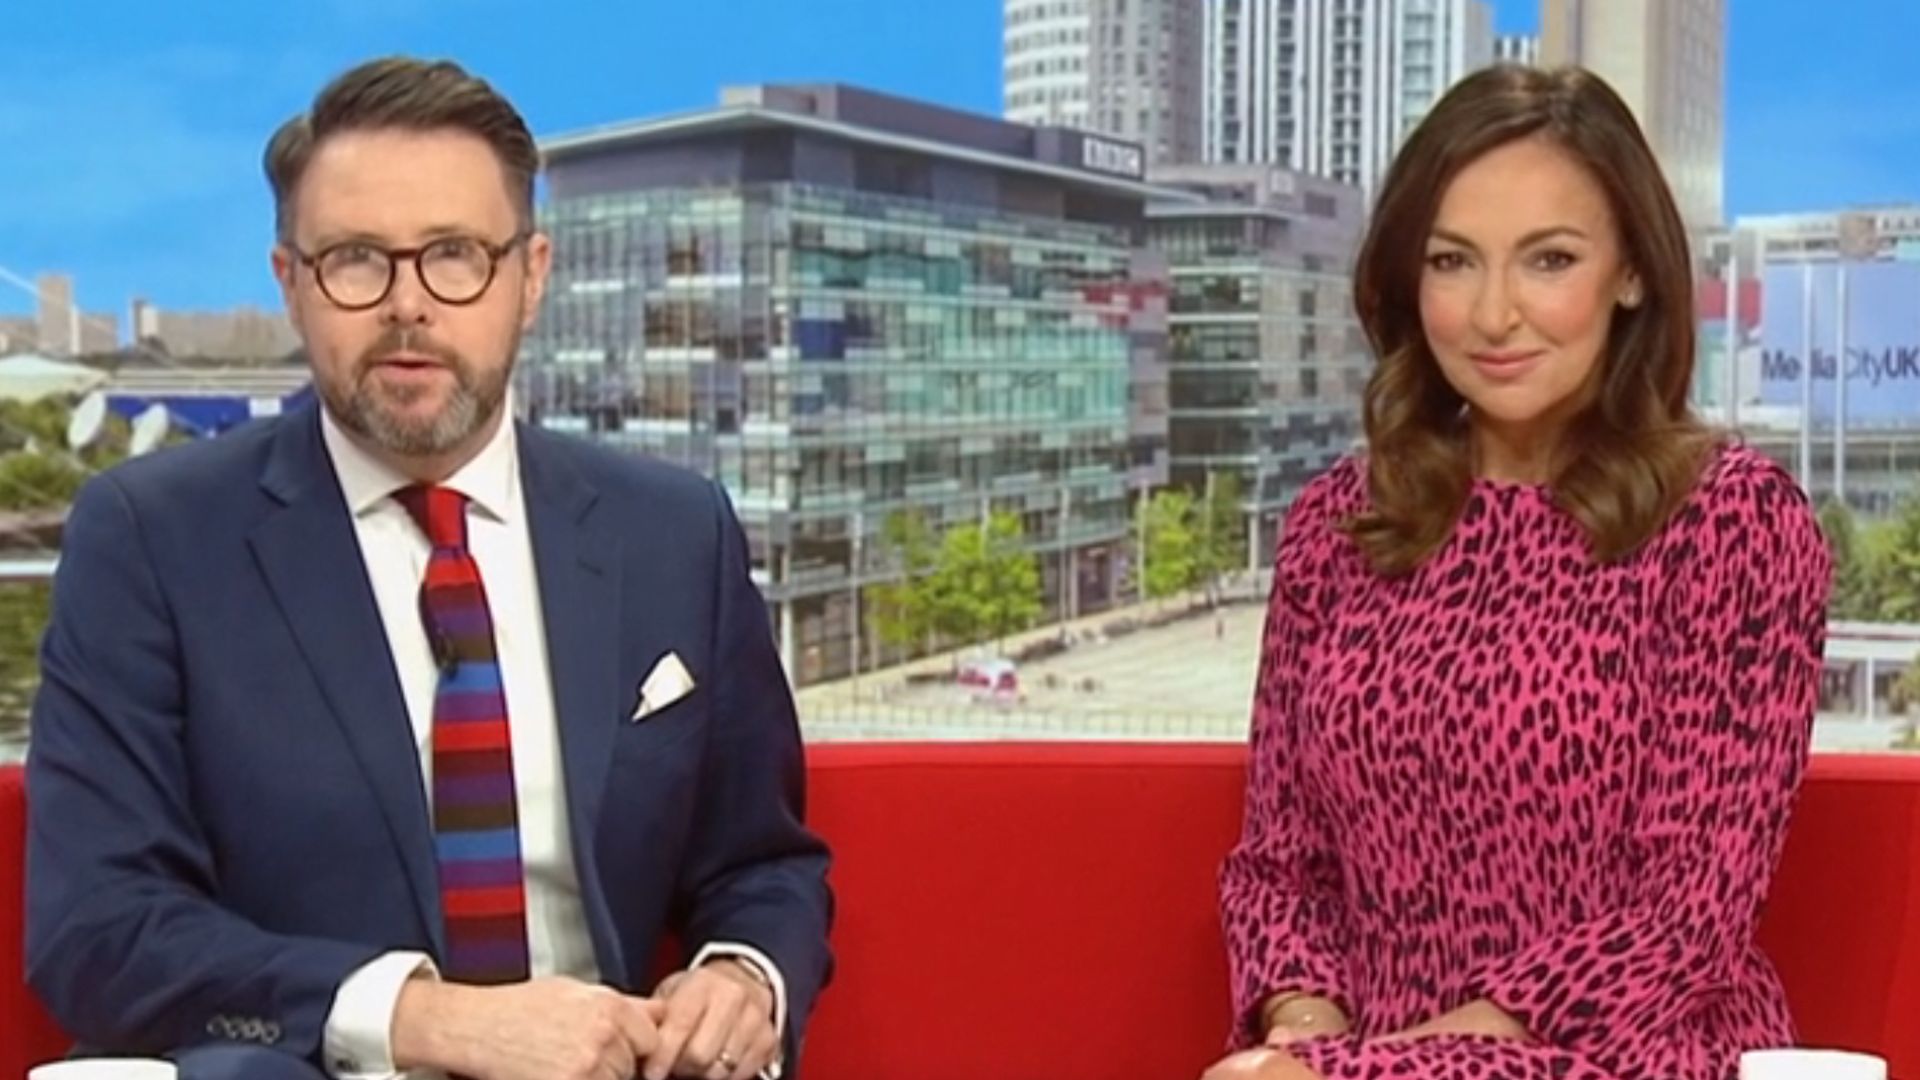 Jon Kay and Sally Nugent on BBC Breakfast